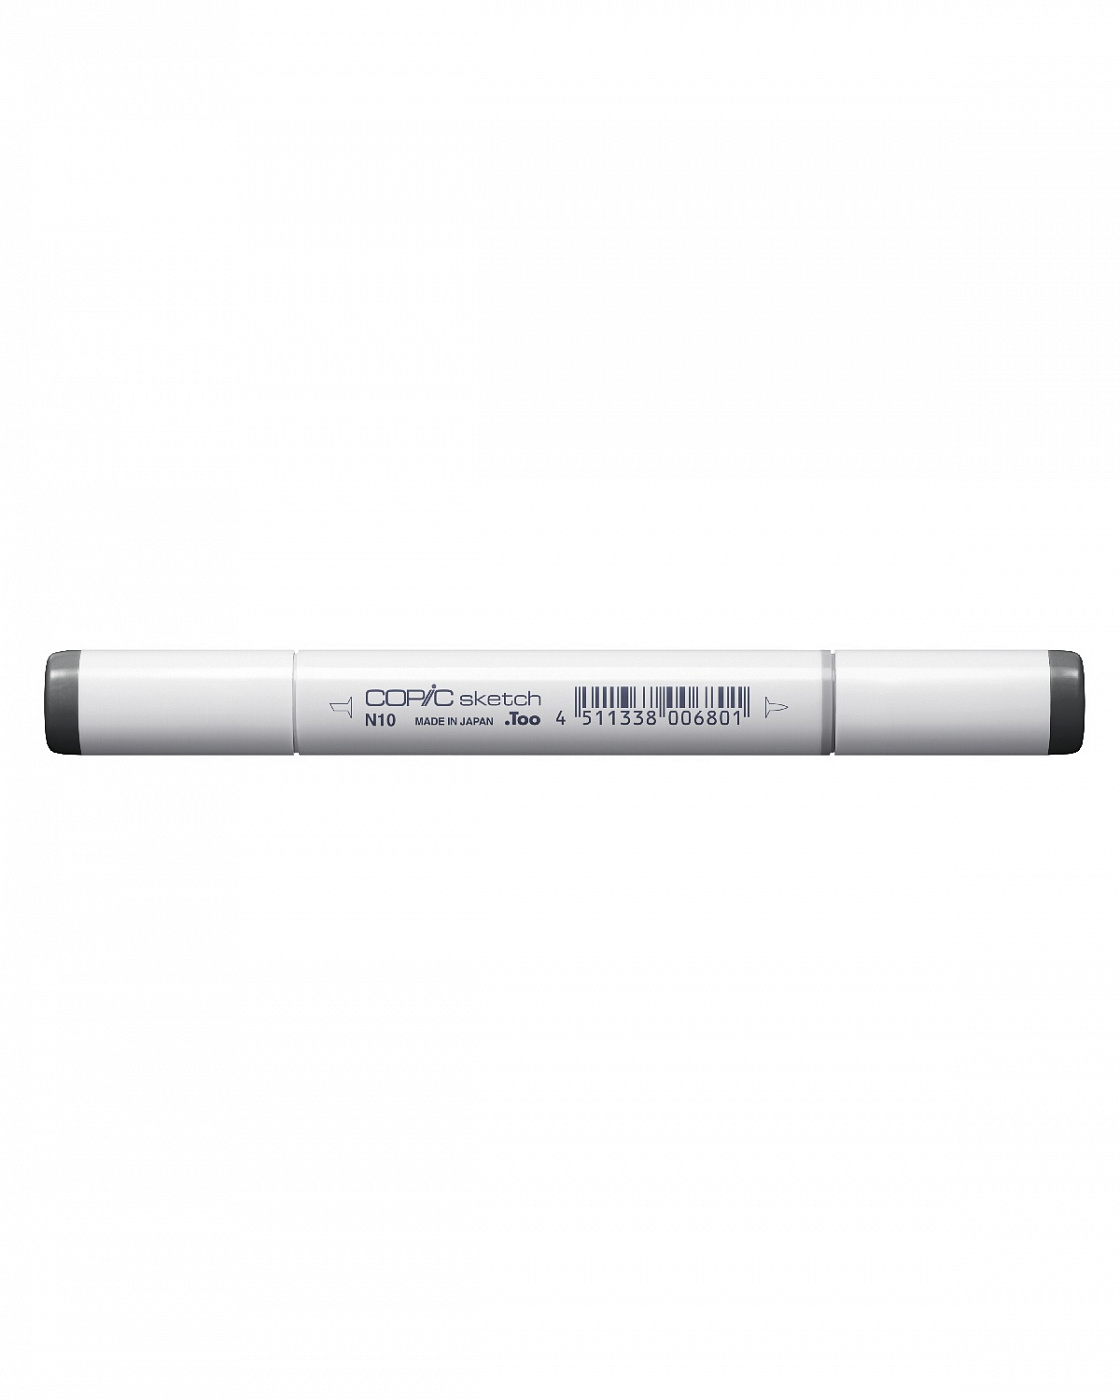 Маркер COPIC sketch N10 (нейтральный серый, neutral gray) (оттенок №10) маркер copic w0 теплый серый warm gray оттенок 0